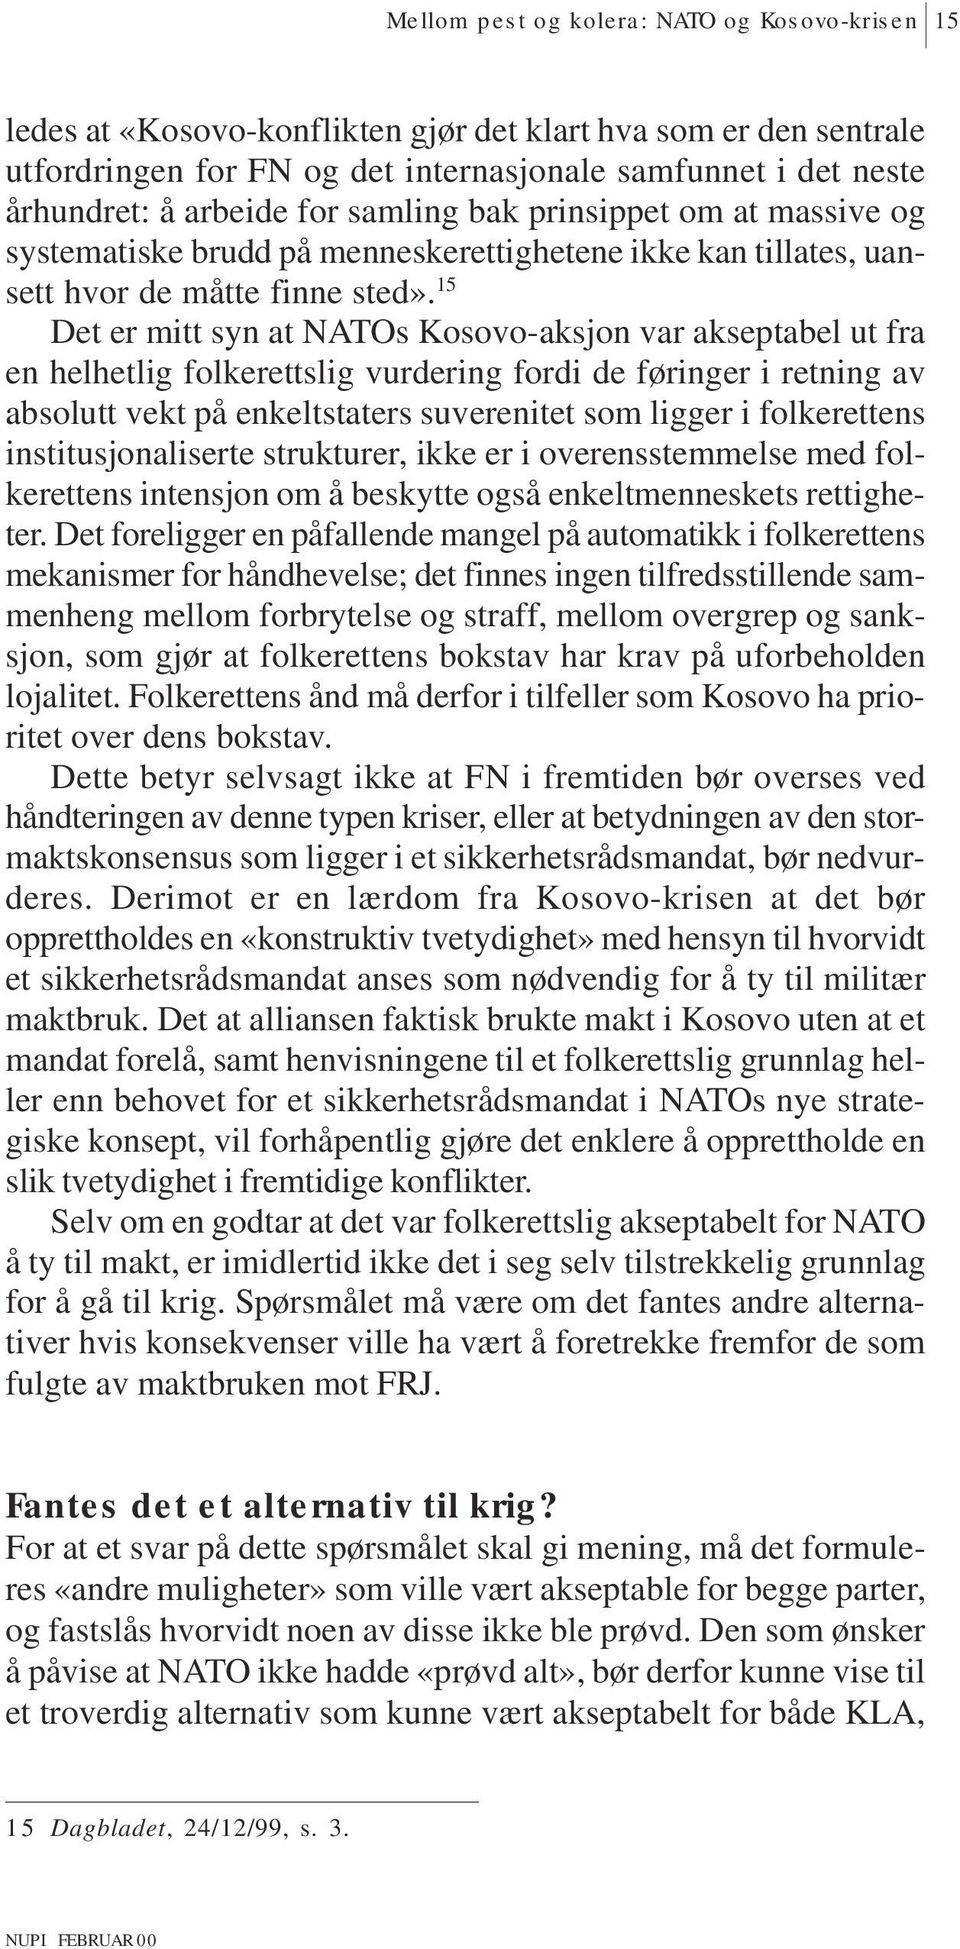 15 Det er mitt syn at NATOs Kosovo-aksjon var akseptabel ut fra en helhetlig folkerettslig vurdering fordi de føringer i retning av absolutt vekt på enkeltstaters suverenitet som ligger i